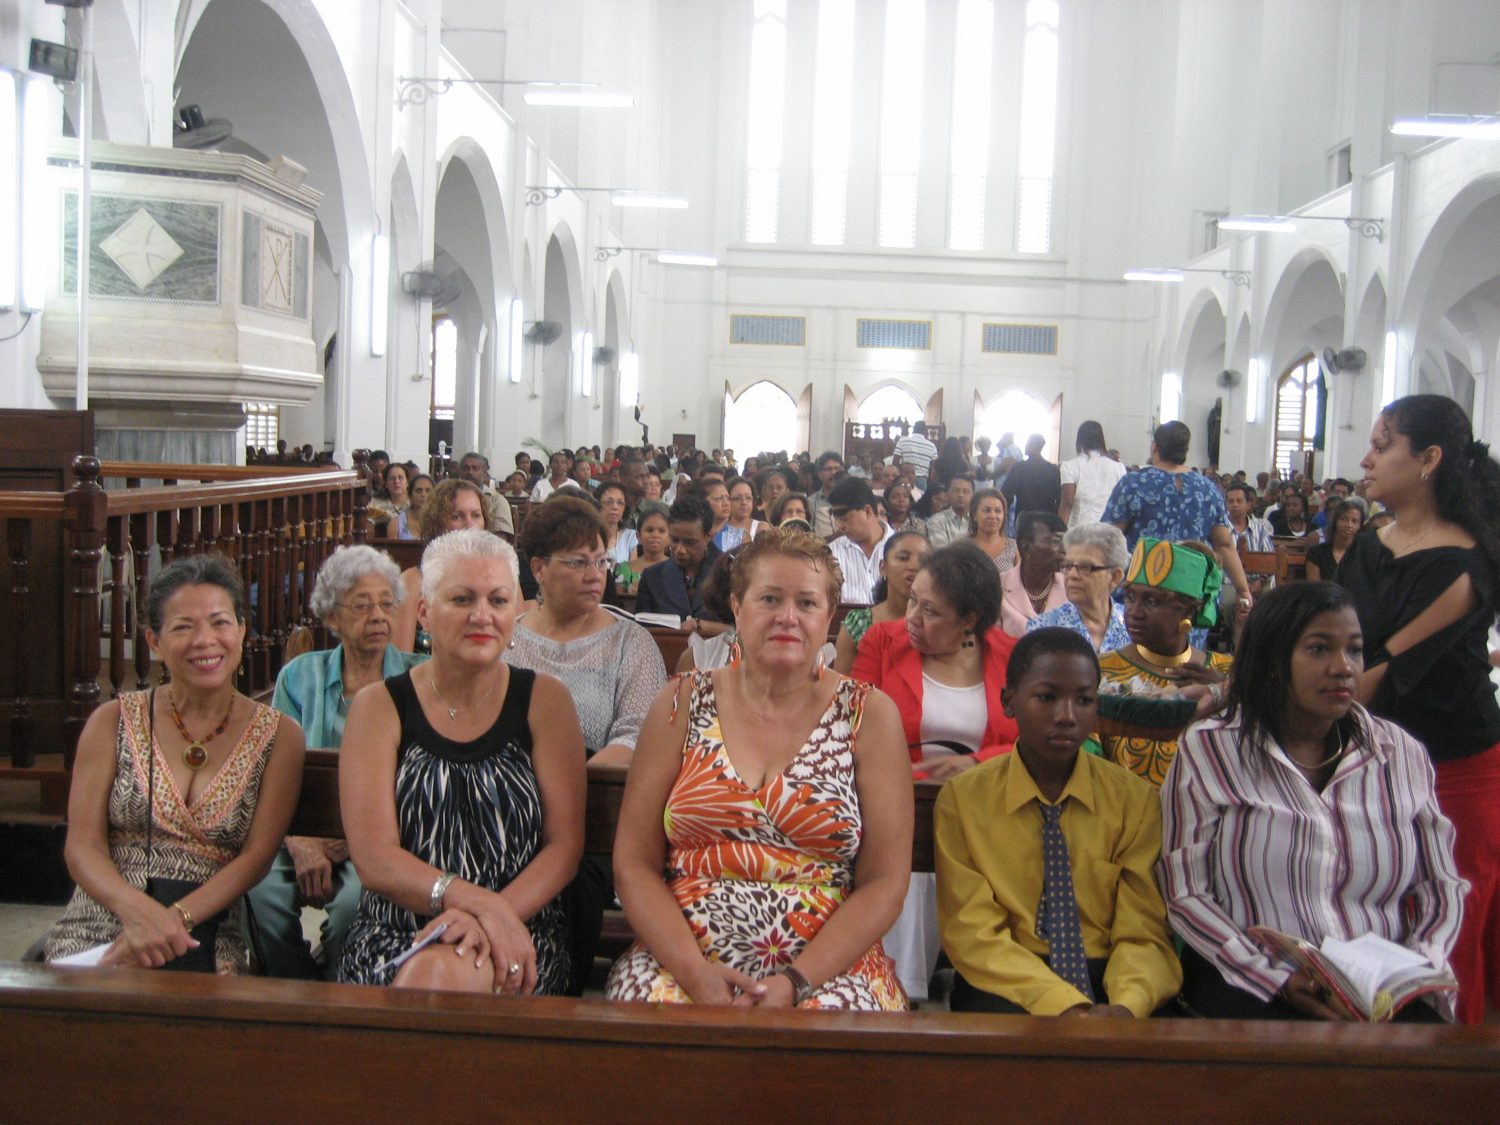 The 2009 St Joseph High reunion mass